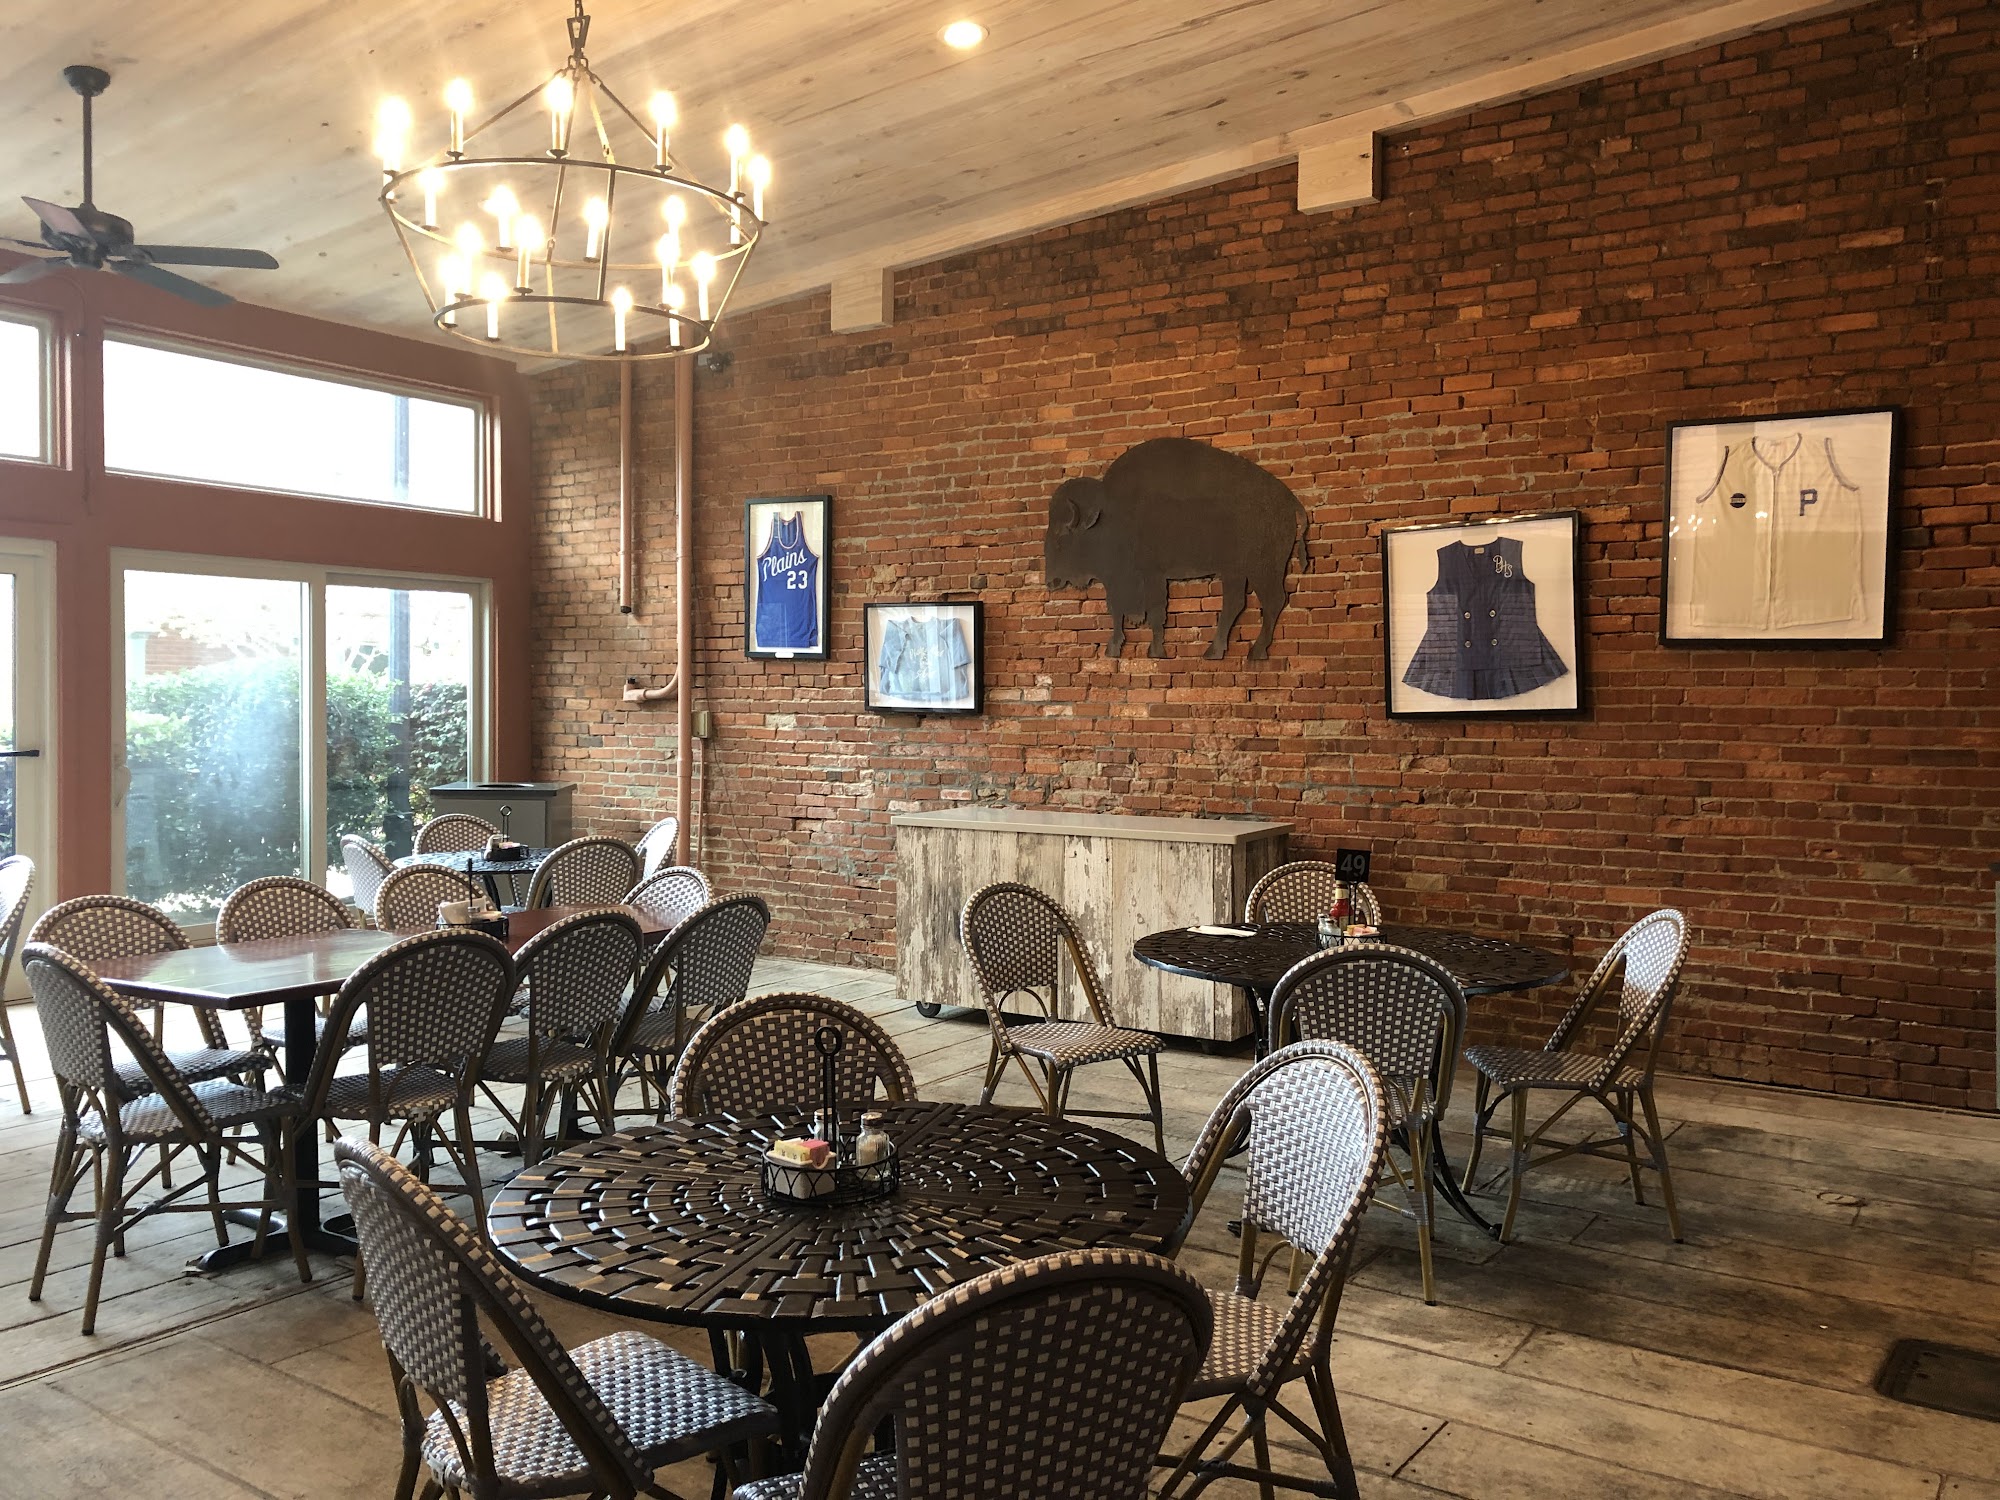 Buffalo Cafe at the Old Bank